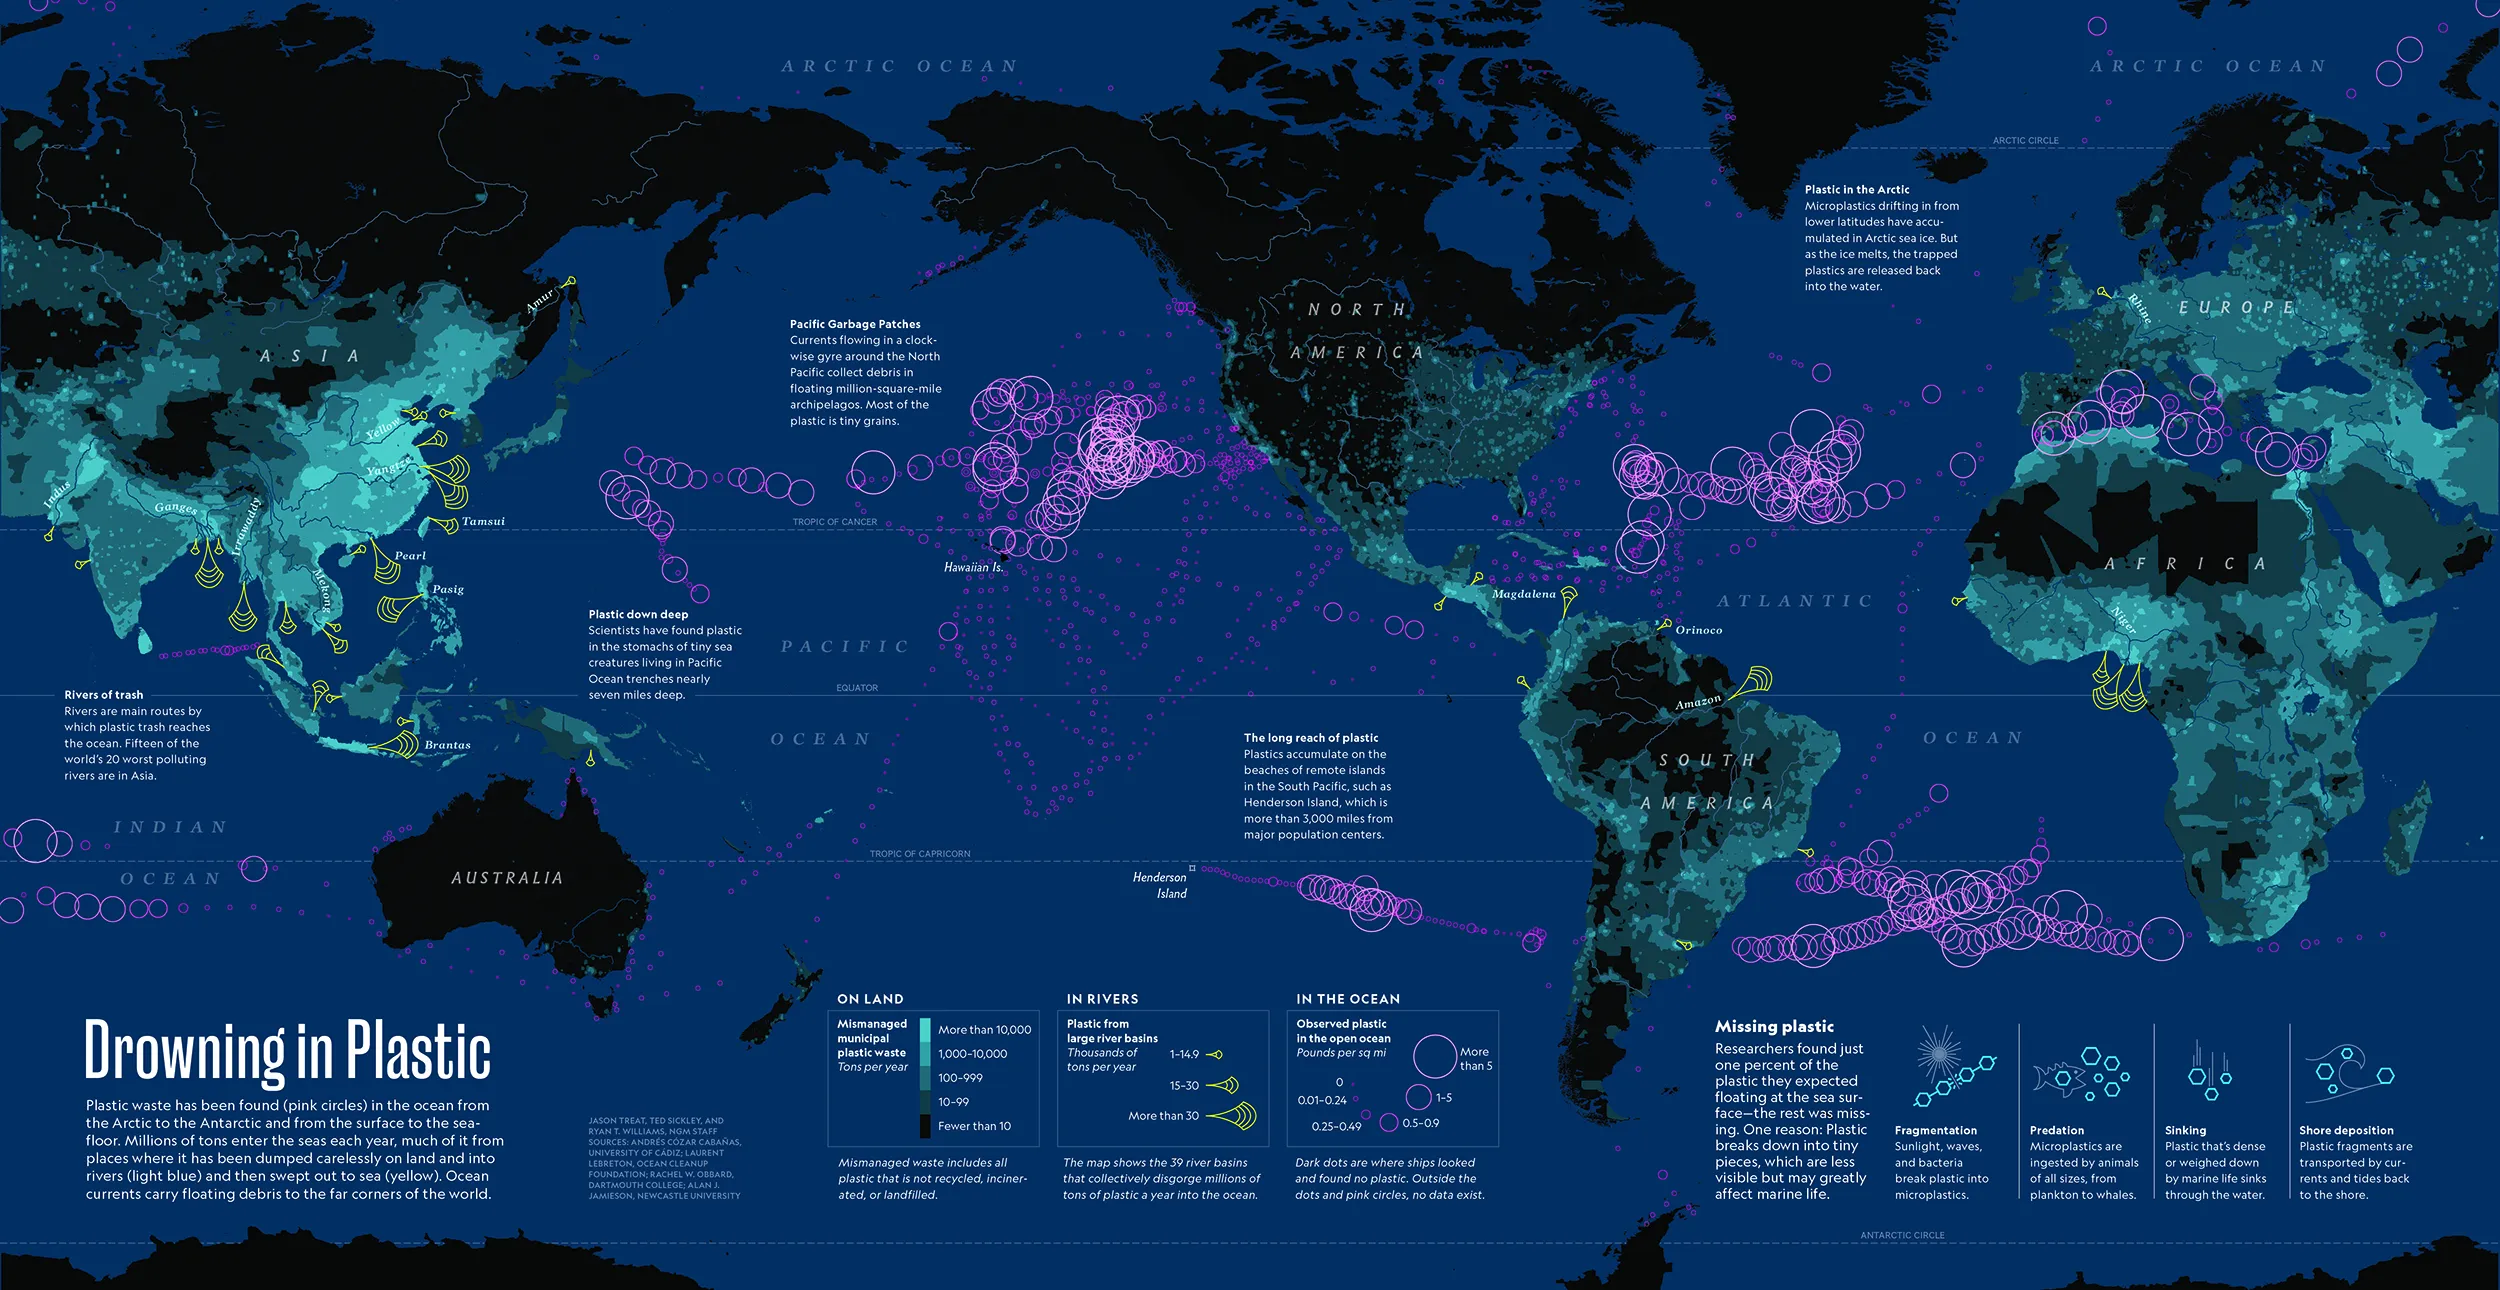 Mapa em paleta de cores escura exibindo regiões com maior descarte de plástico no sudeste asiático